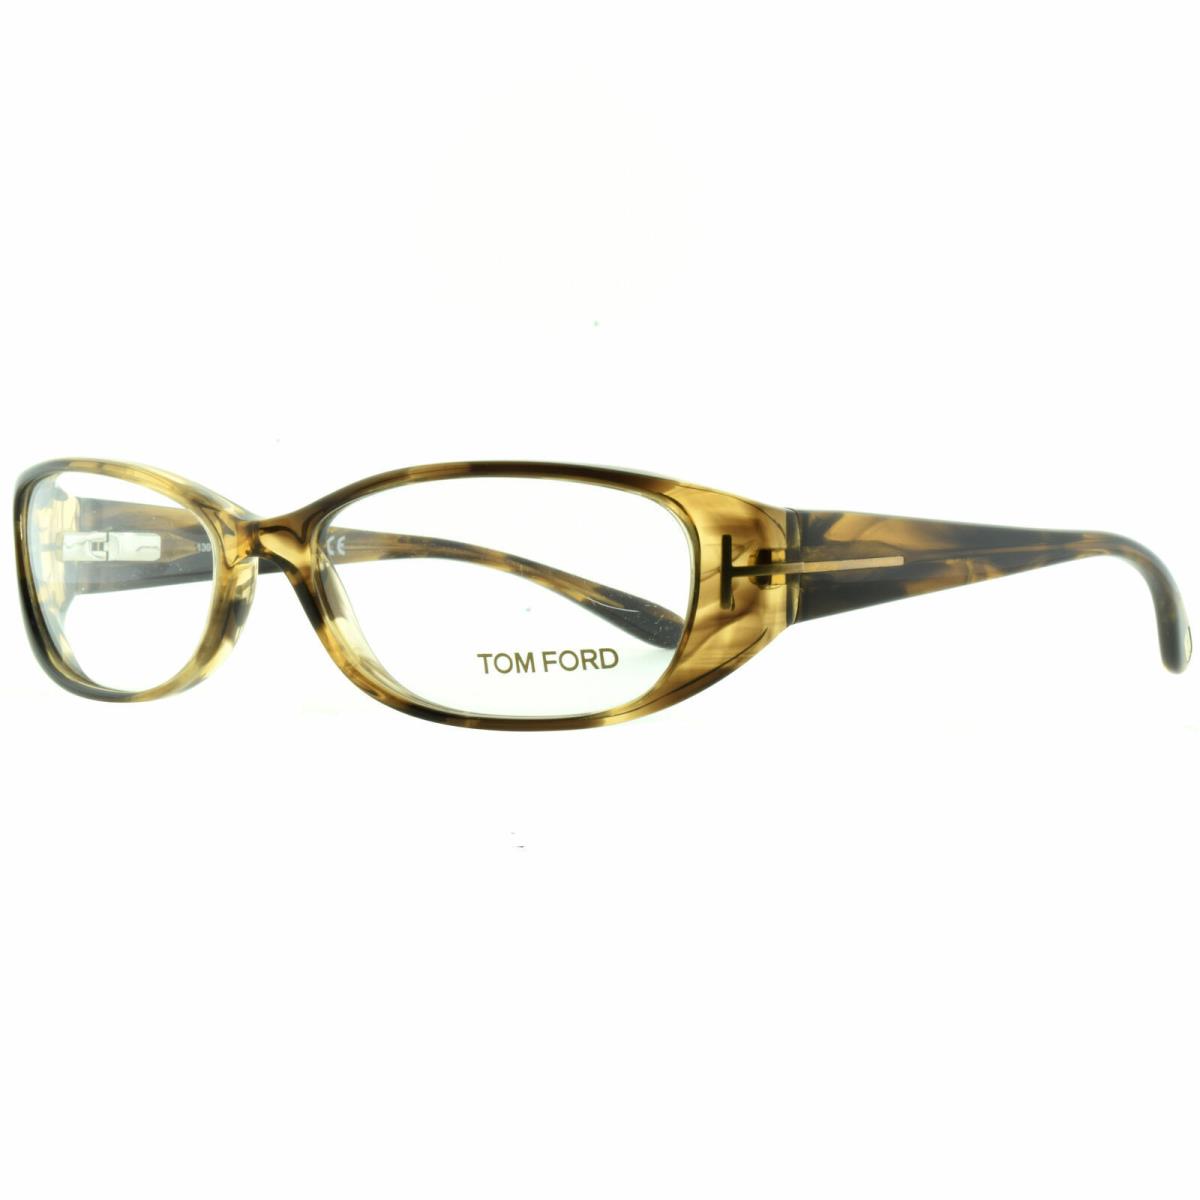 Tom Ford FT5075 U45 Brown Horn Oval Optical Frames Eyeglasses